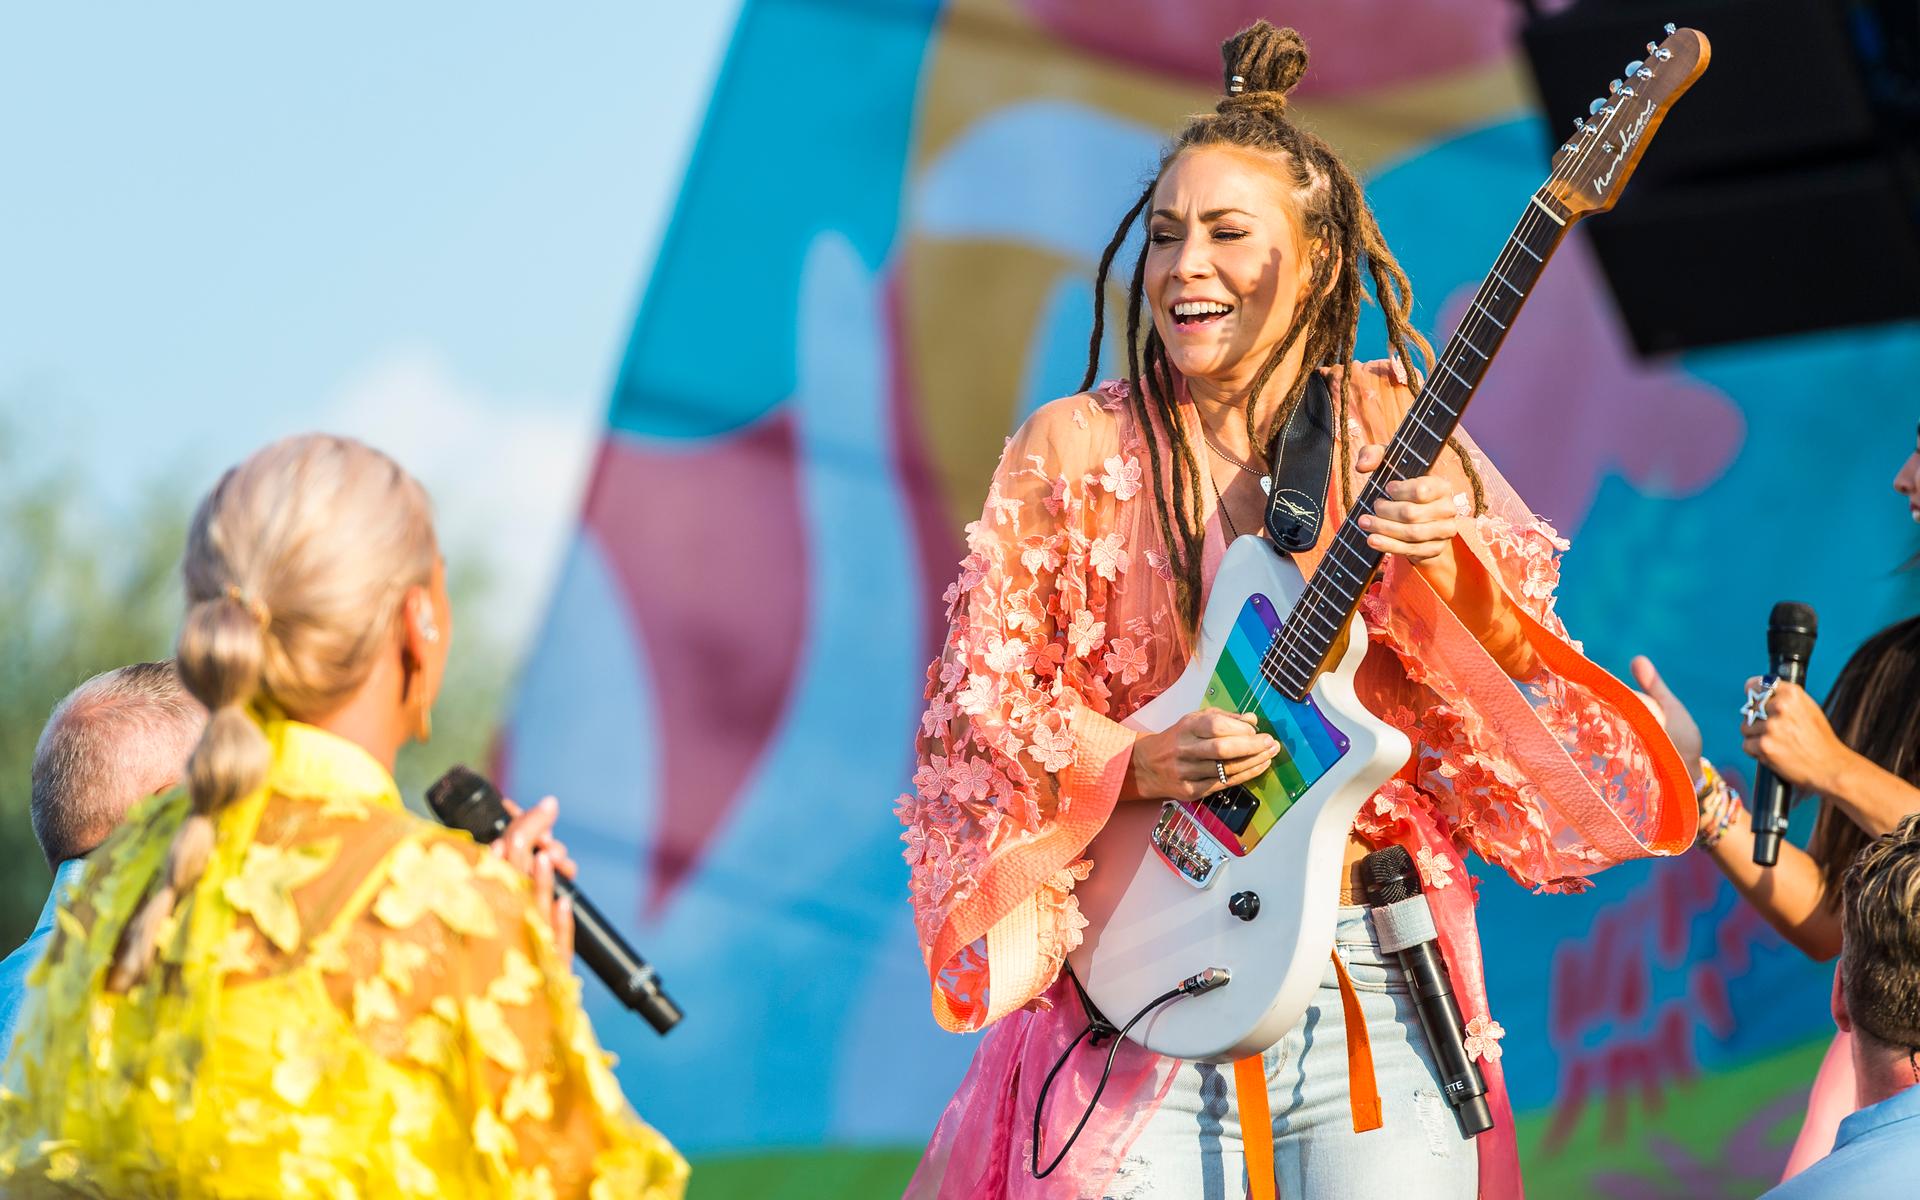 Mariette spelar elgitarr under Diggiloo 2019 på Sanden.